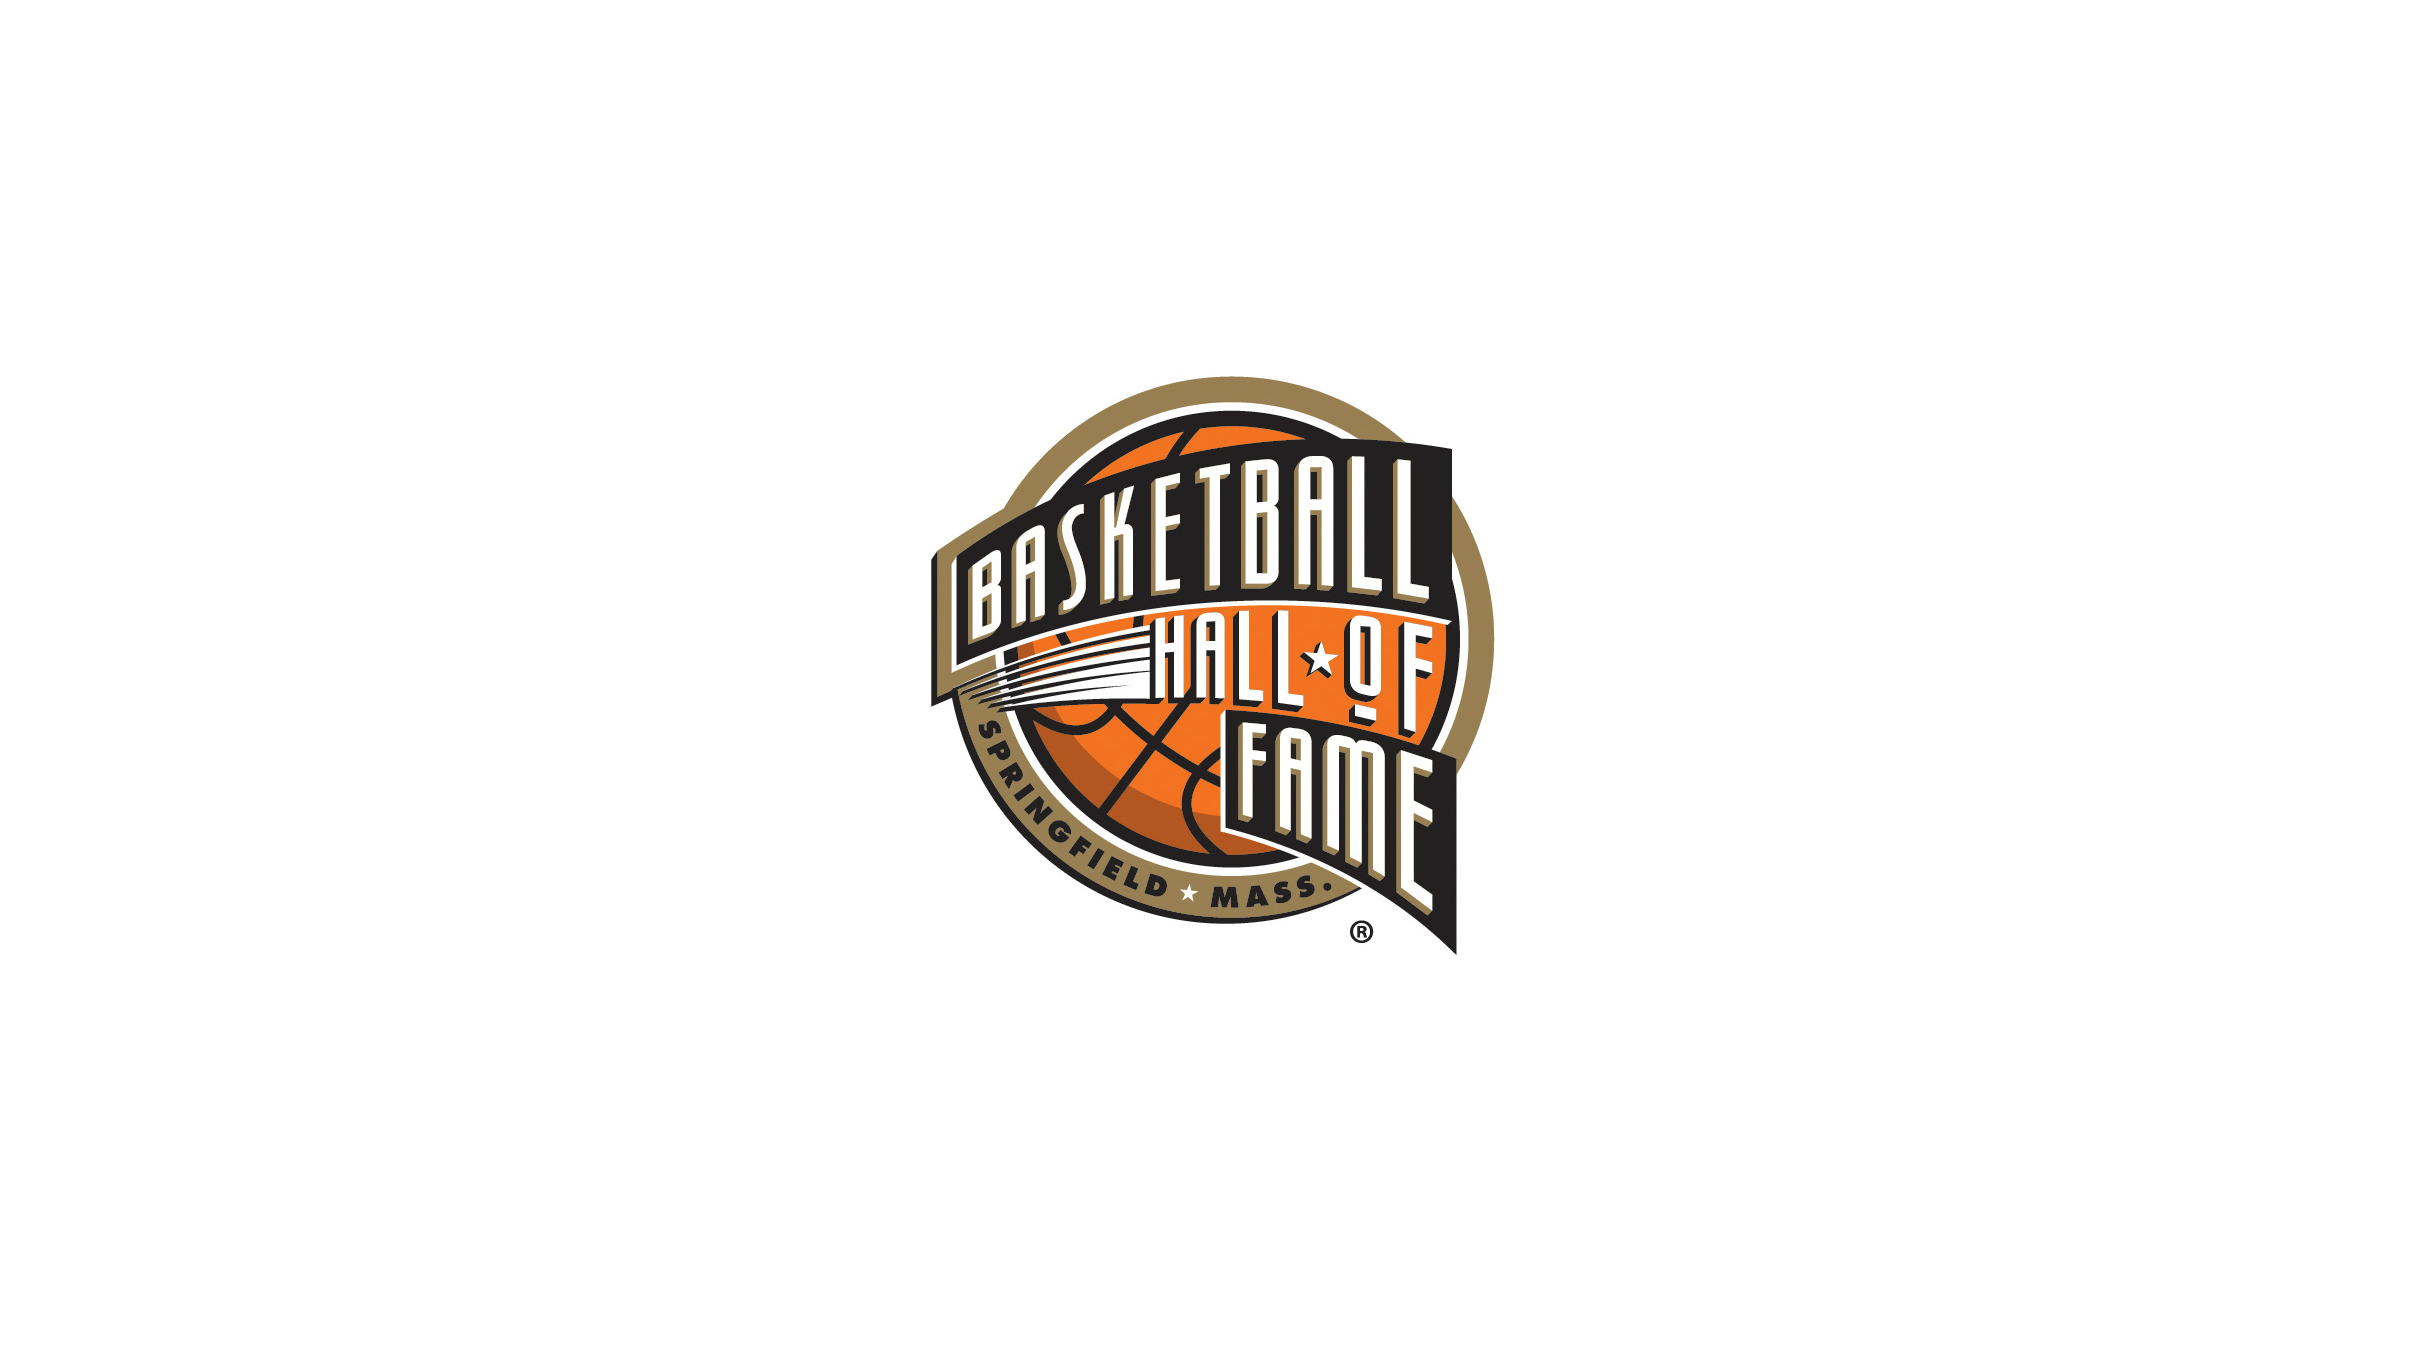 Basketball Hall of Fame Women's Challenge